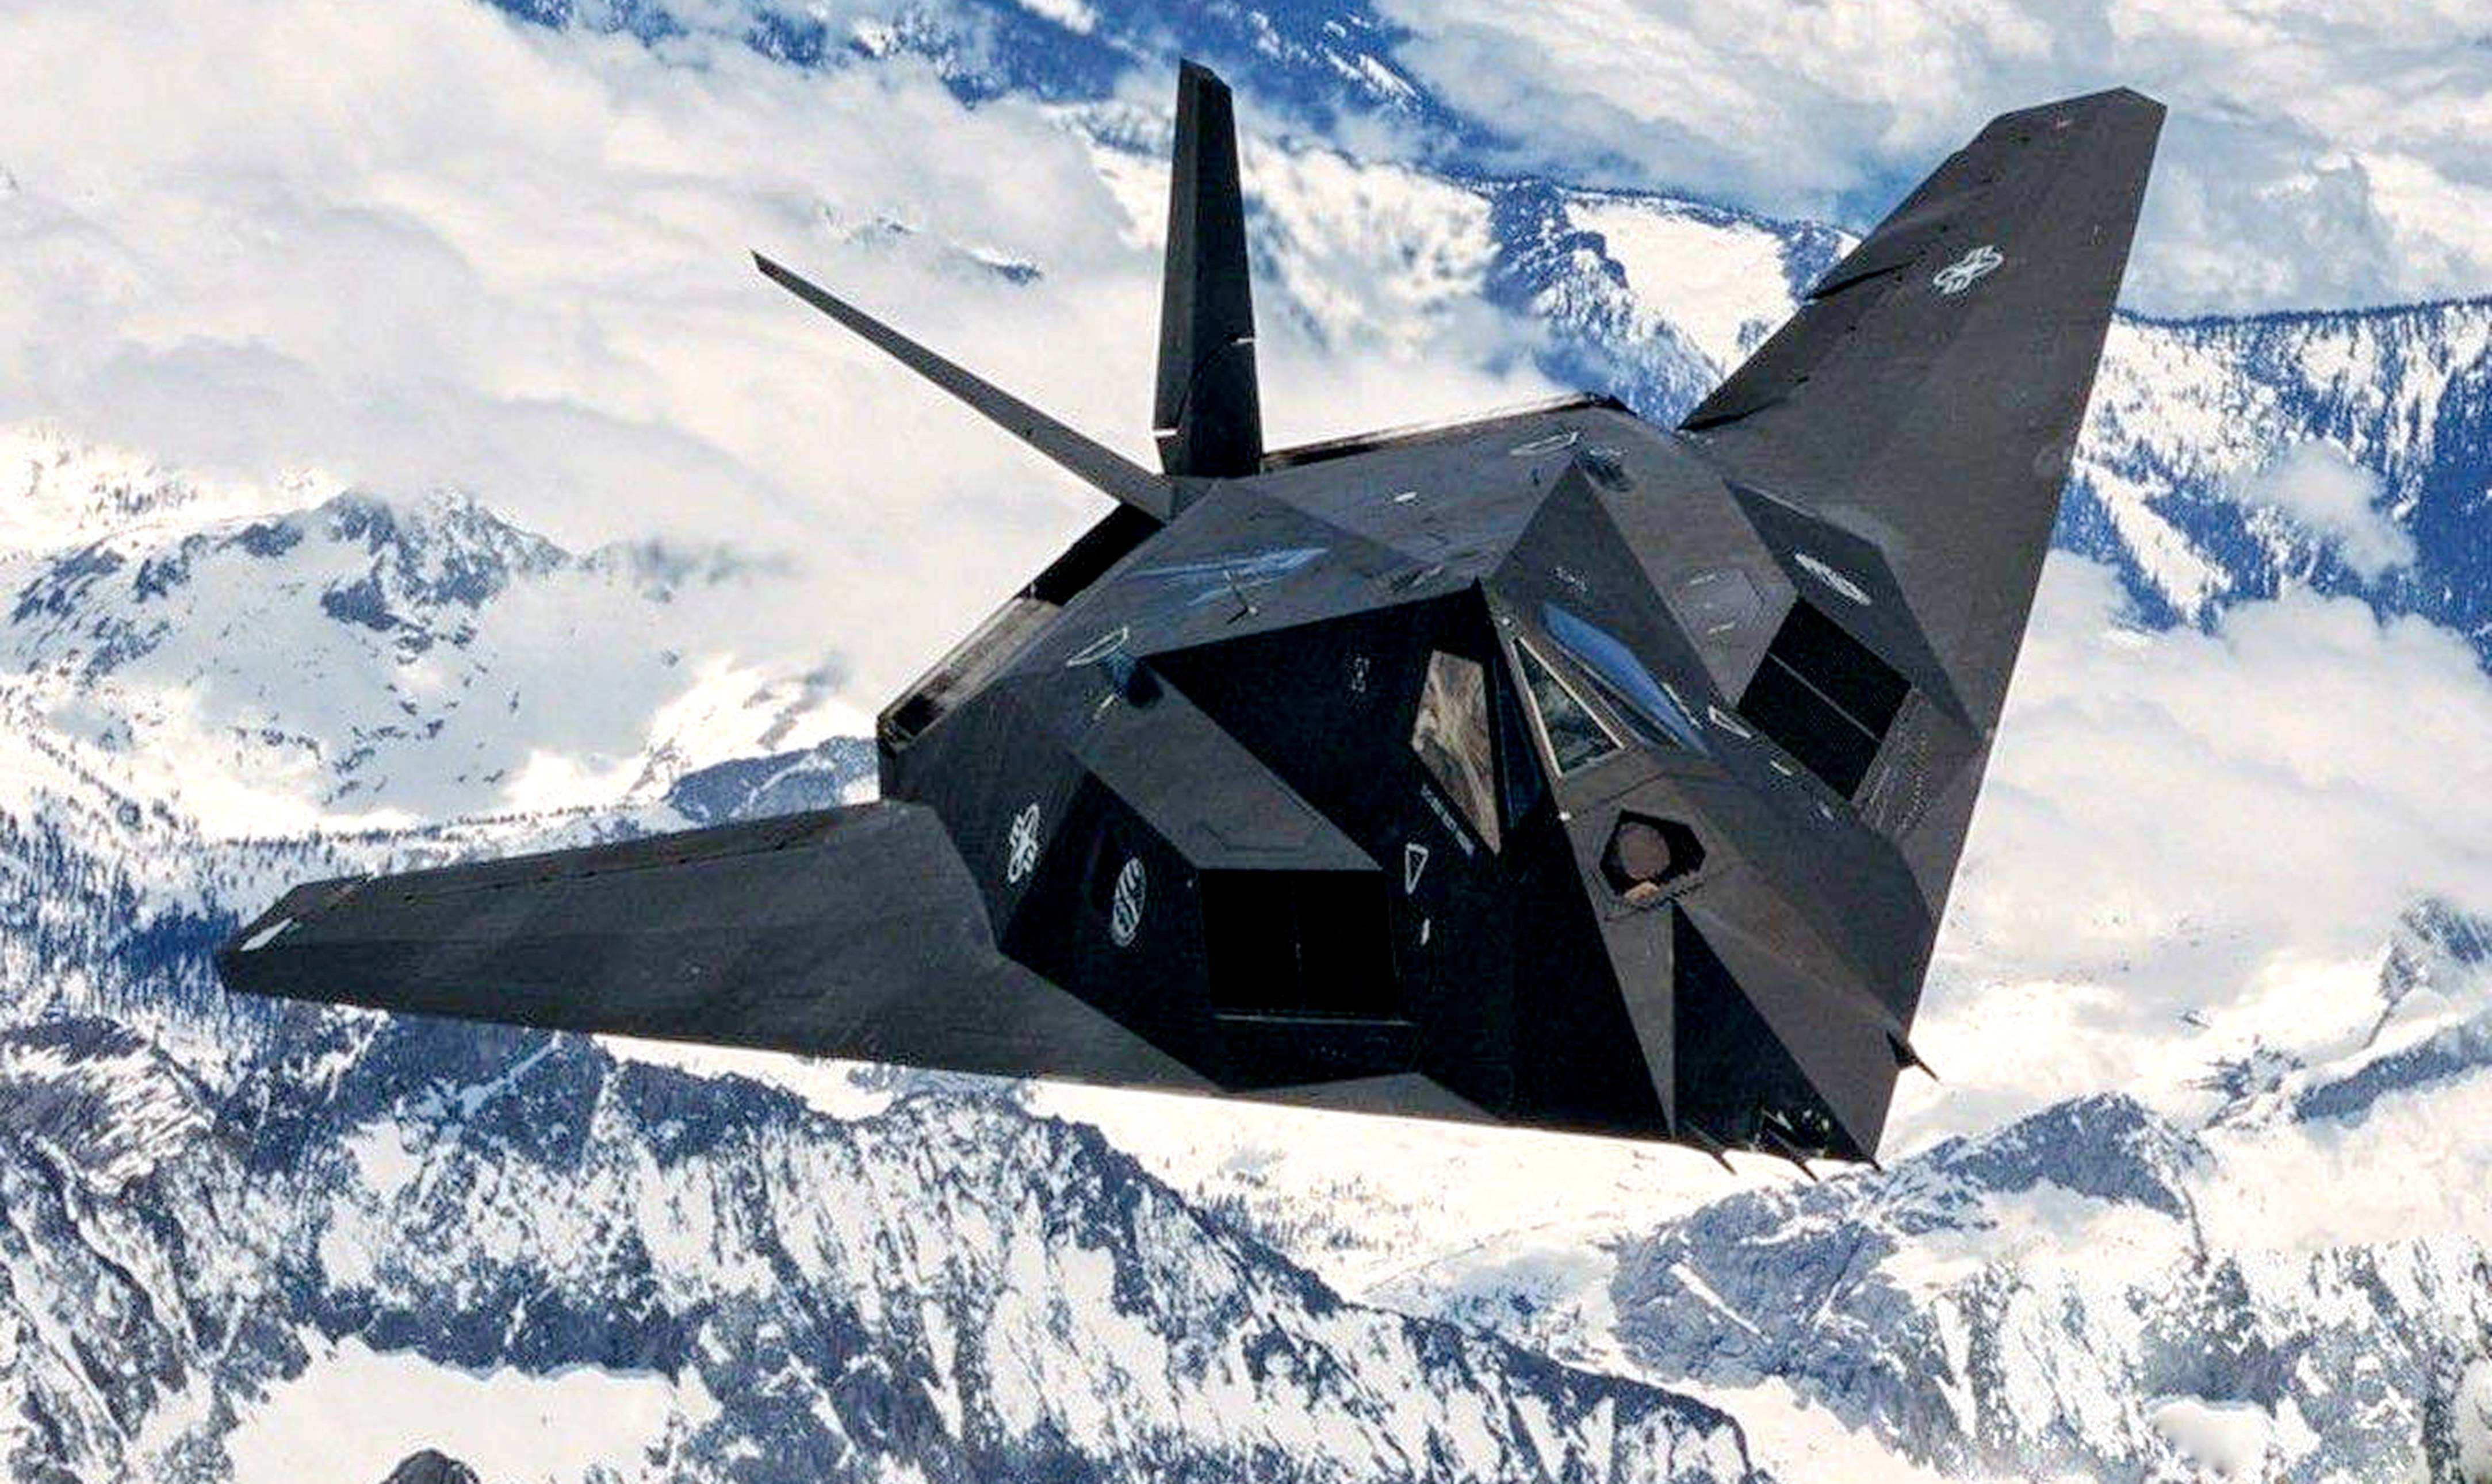 f-117a攻击机是美国一型单座双发亚音速多功能隐身攻击机,是世界上第